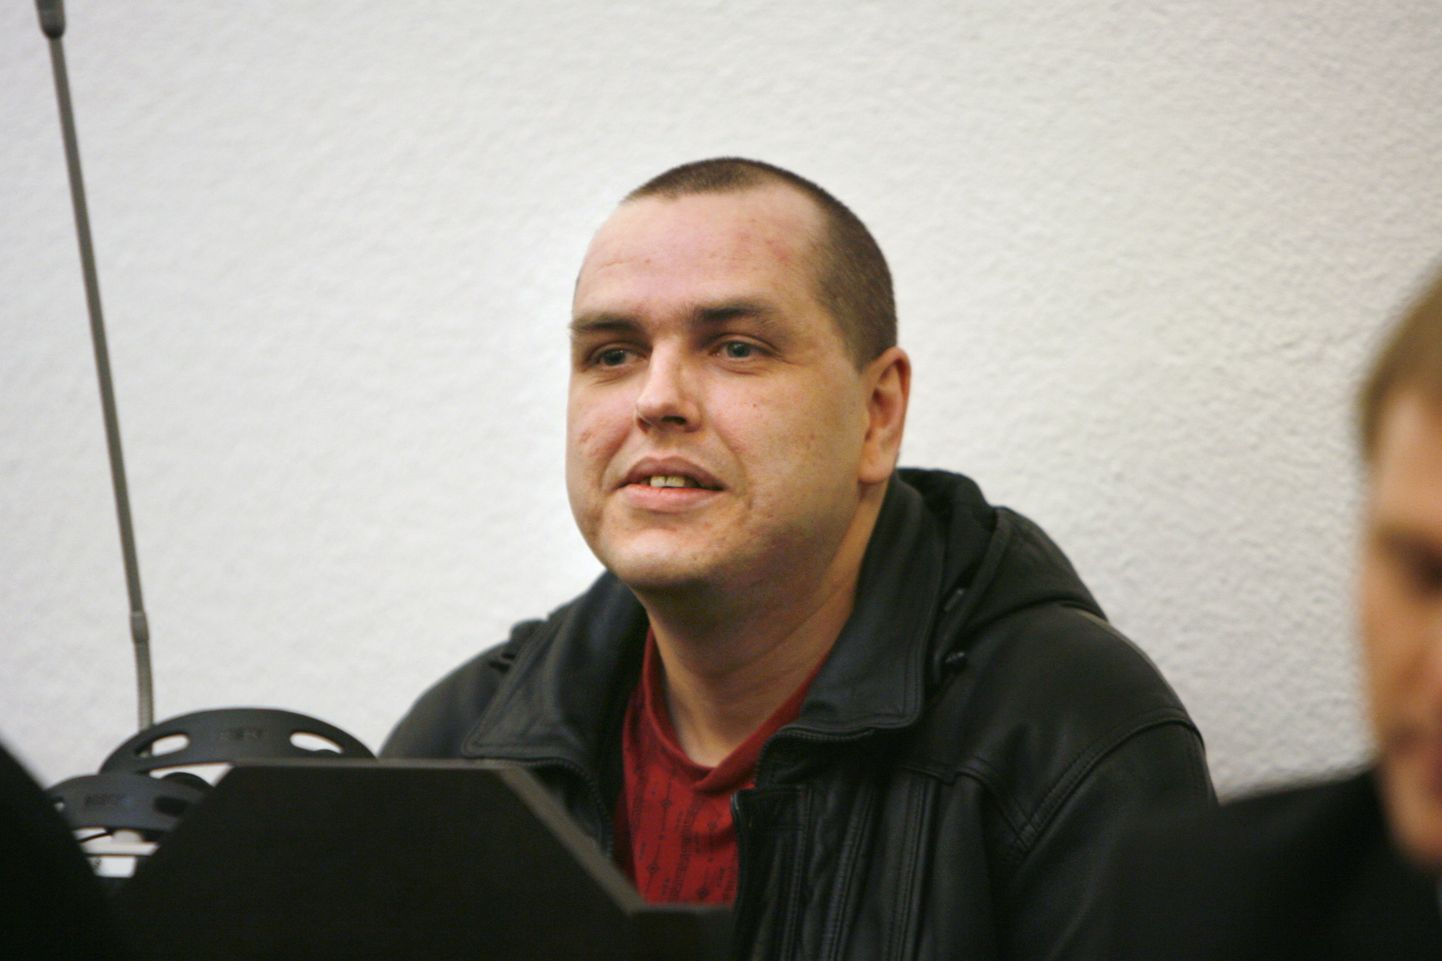 Rene Vainik nõudis Viru vanglalt 1500 eurot selle eest, et tal ei võimaldatud abikaasa ja vennaga lühiajalistel kokkusaamistel suhelda ilma klaasist vaheseinata.